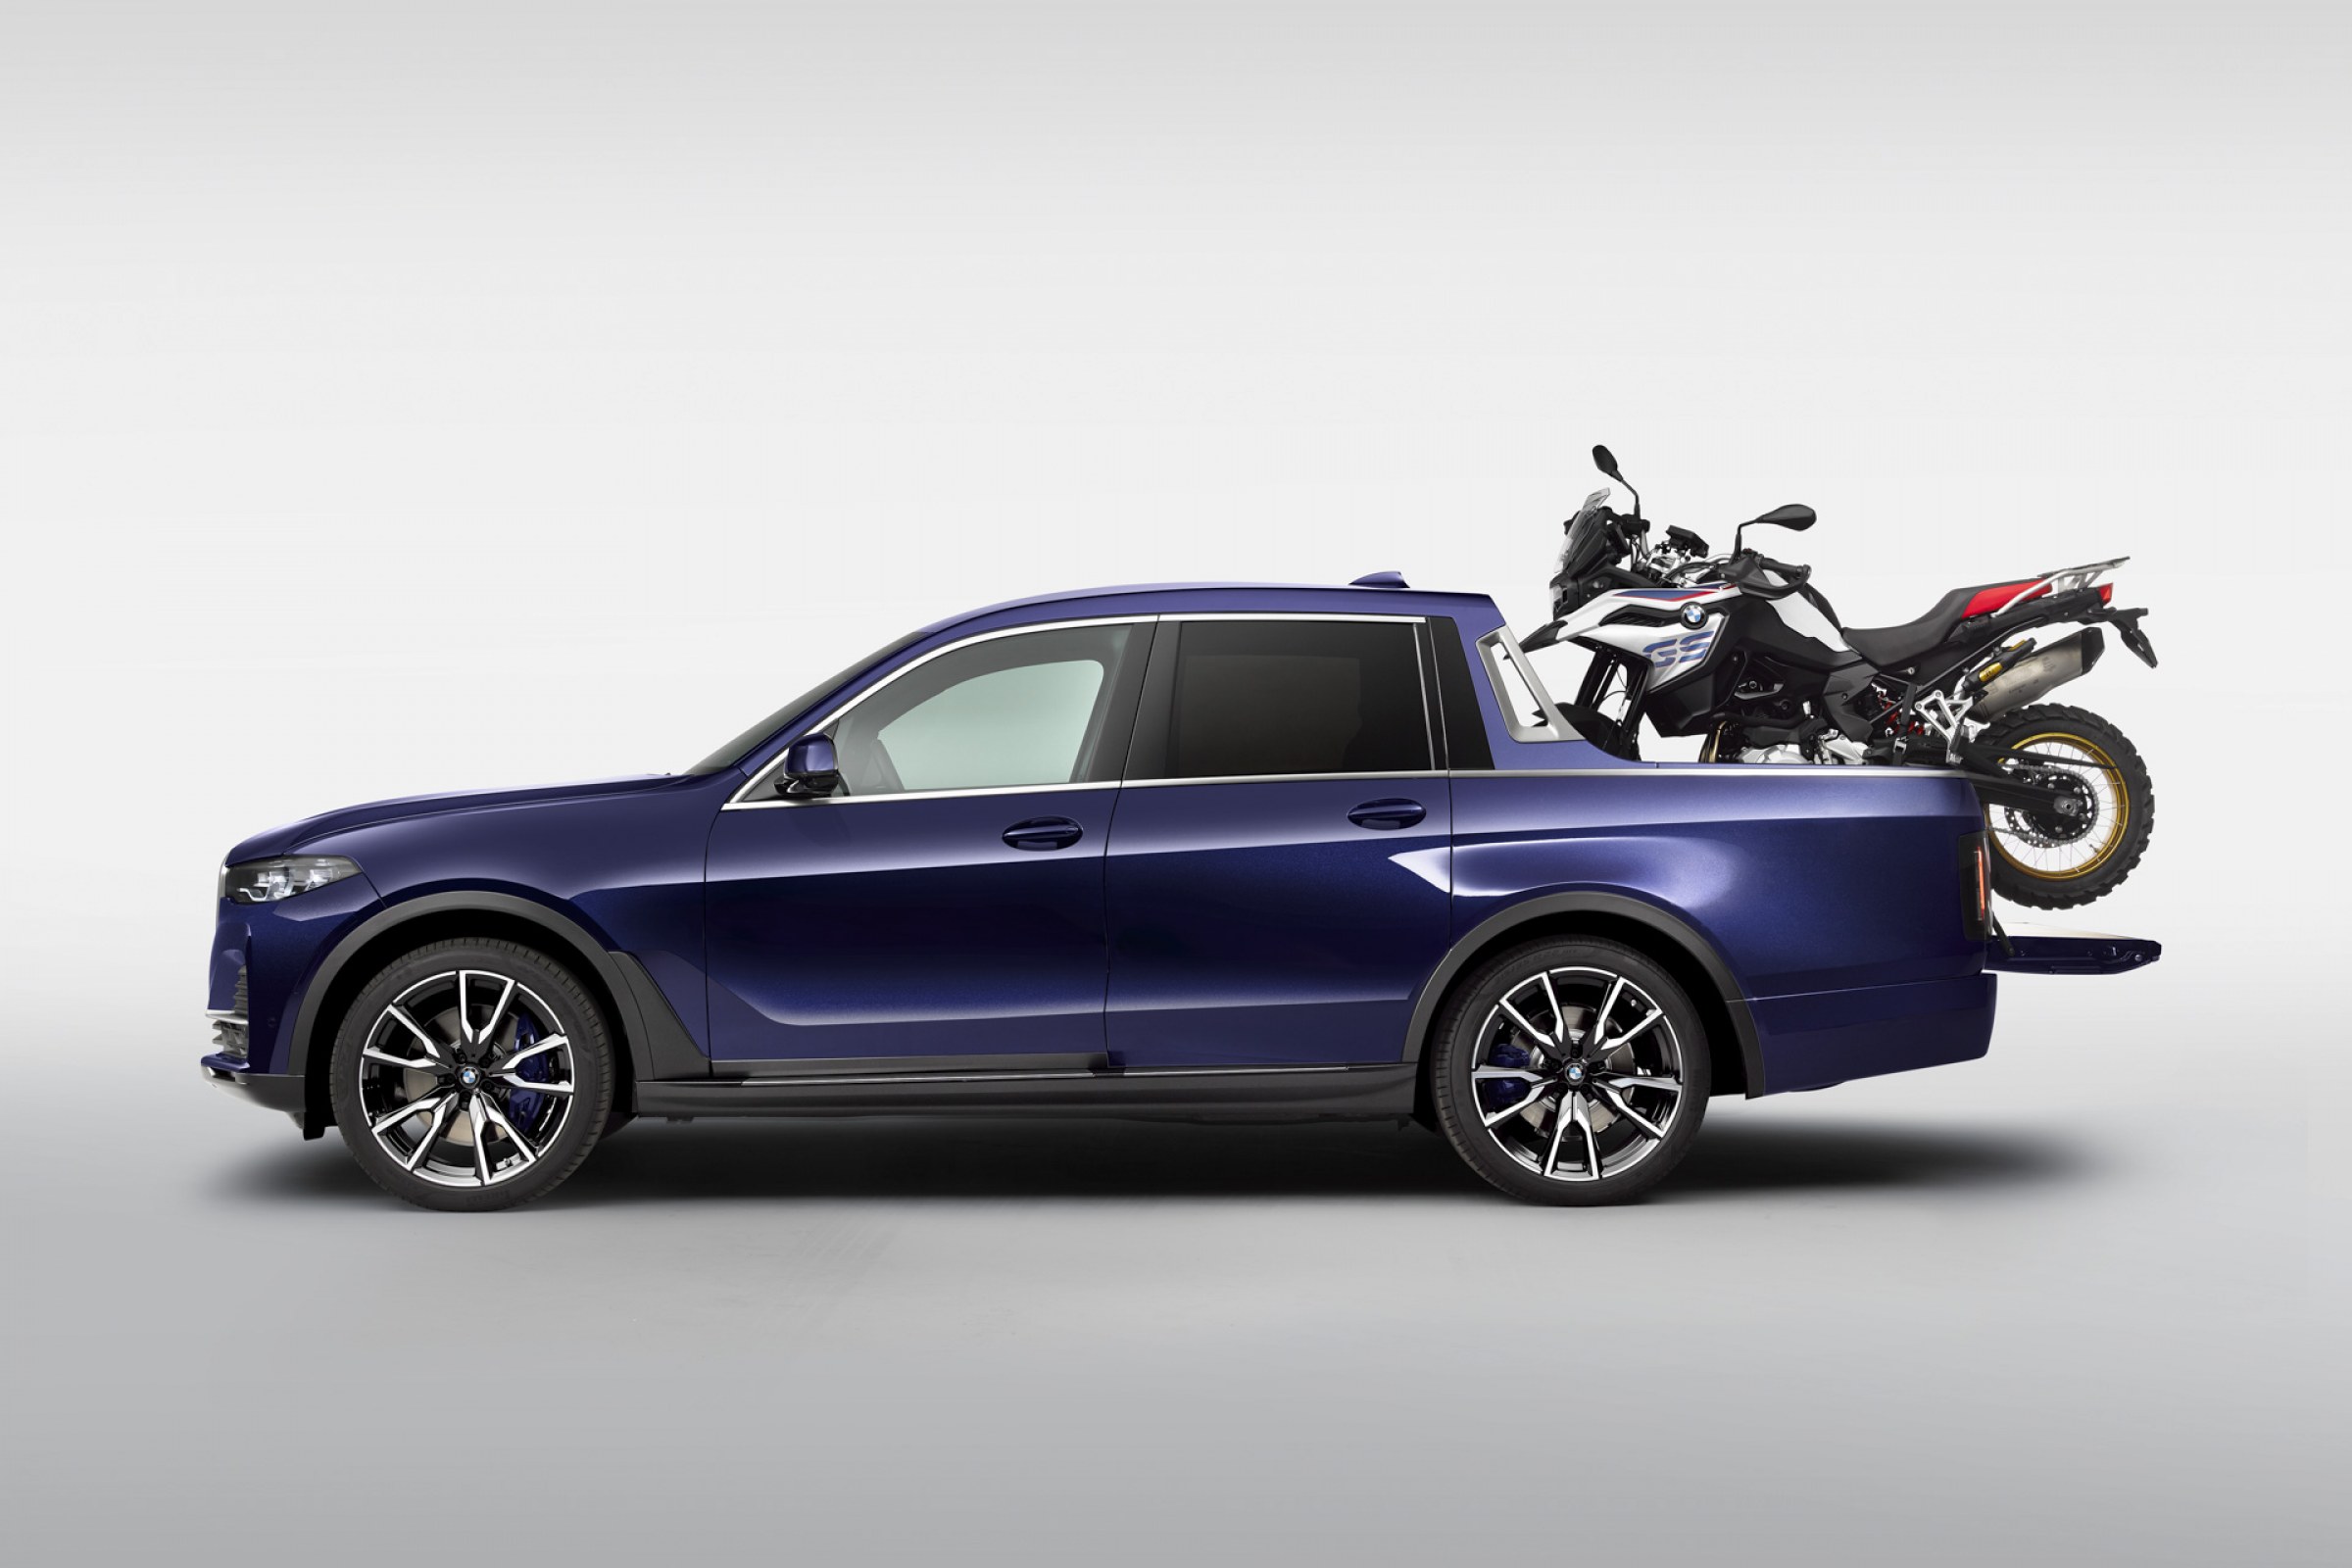 BMW X7 Pick-up luksus, elegancja i walory użytkowe